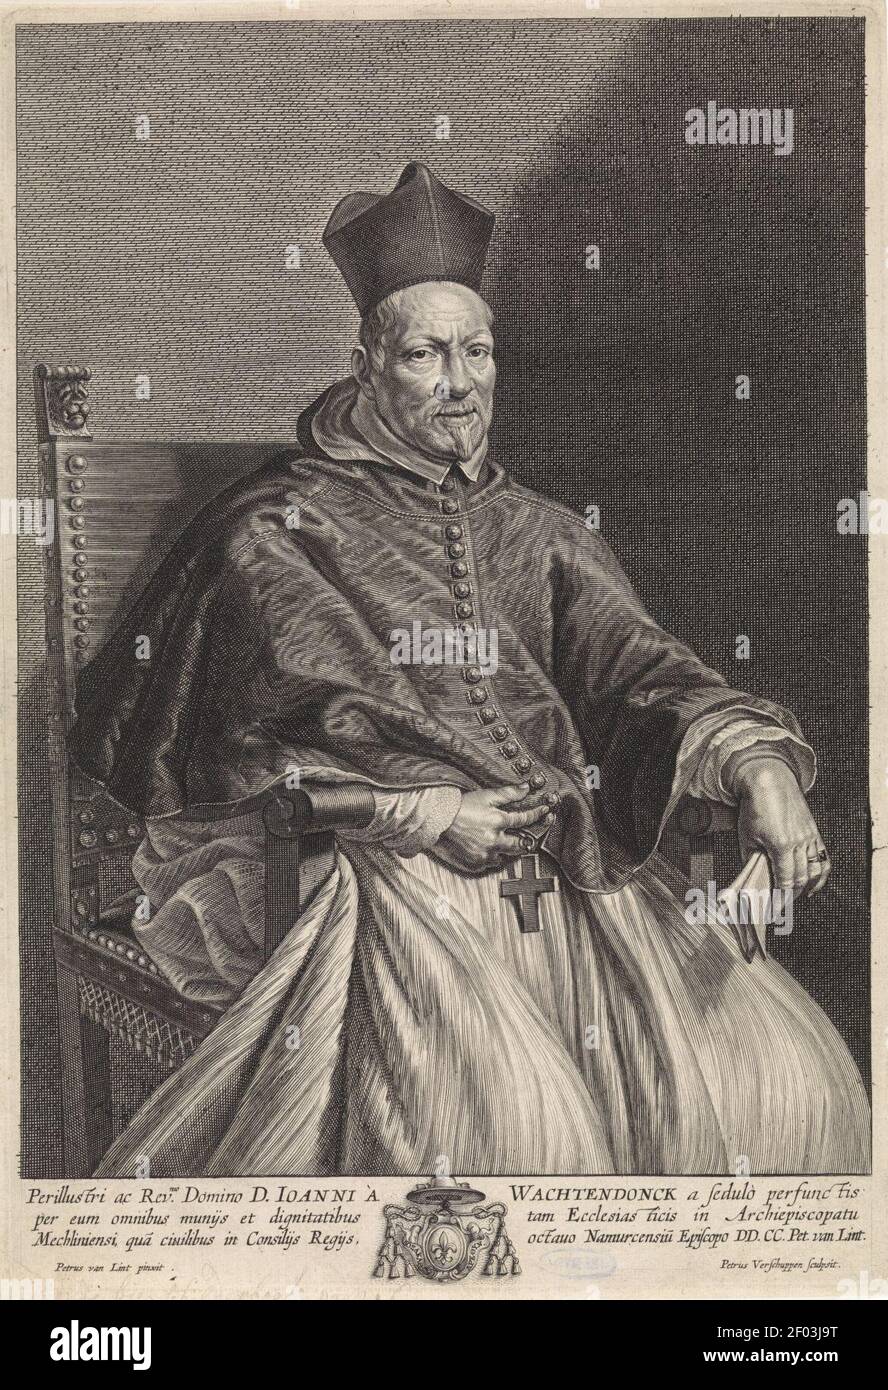 Pieter van Lint, Pieter van Schuppen - Portrait of bishop Johannes Wachtendonck. Stock Photo